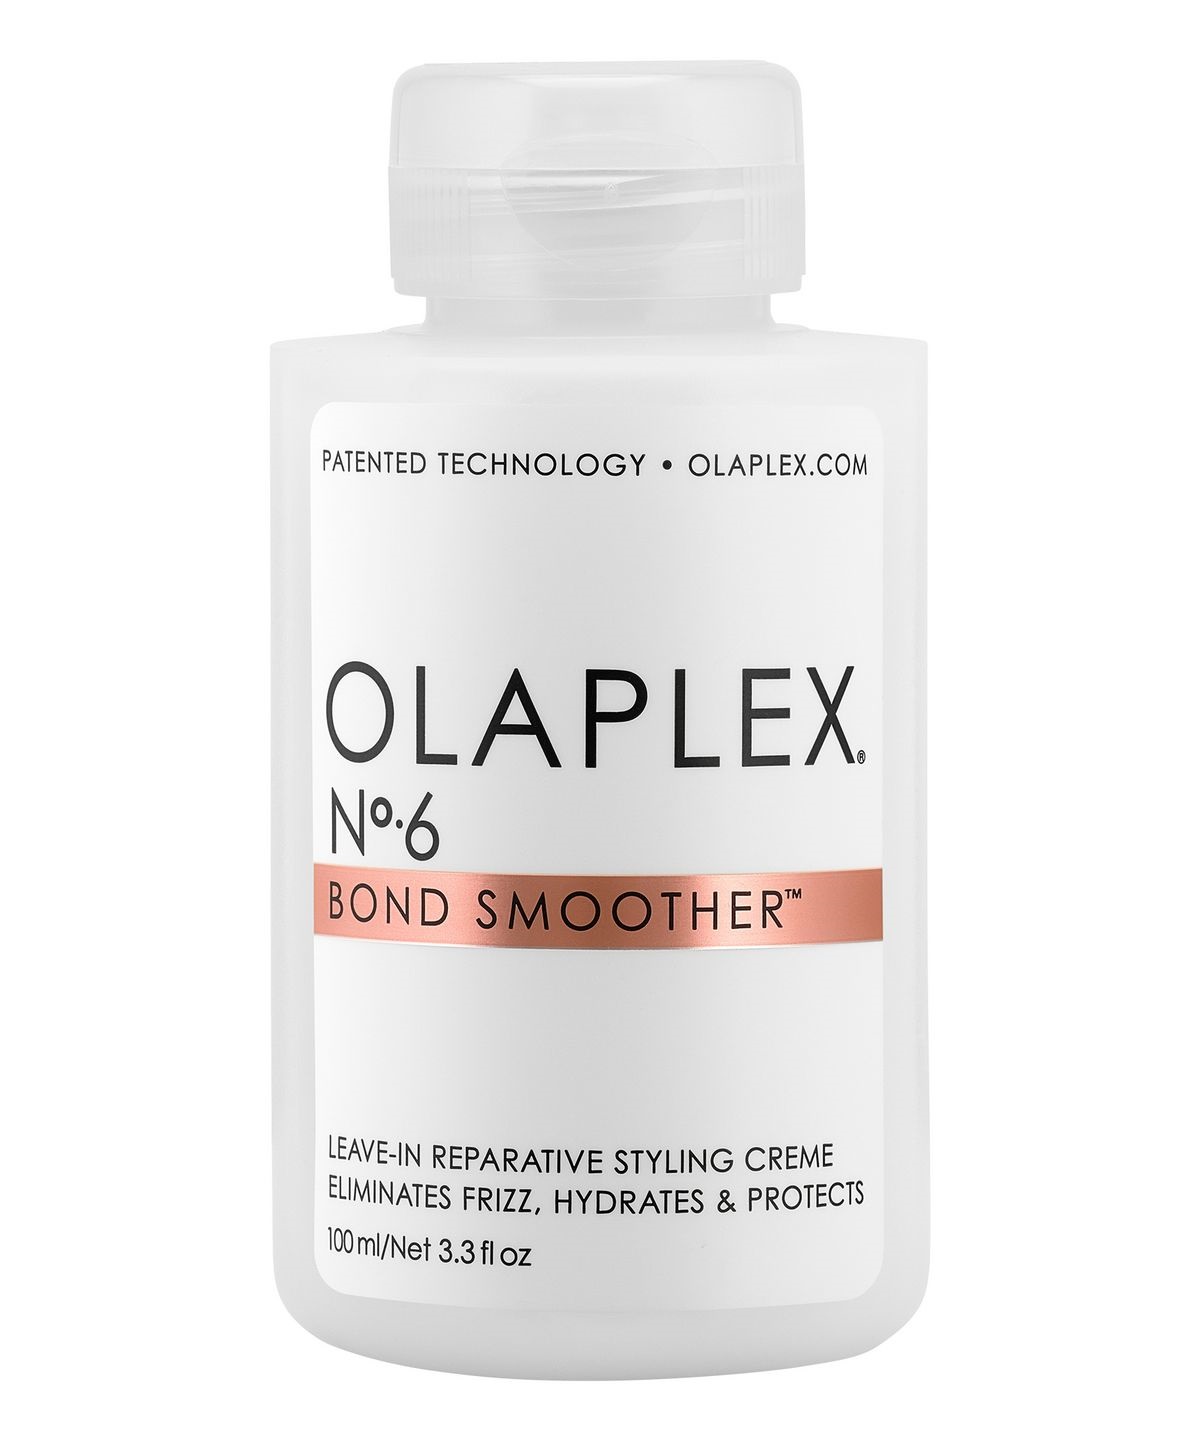    Olaplex №6 bond smoother несмываемый крем система защиты волос 100 мл *